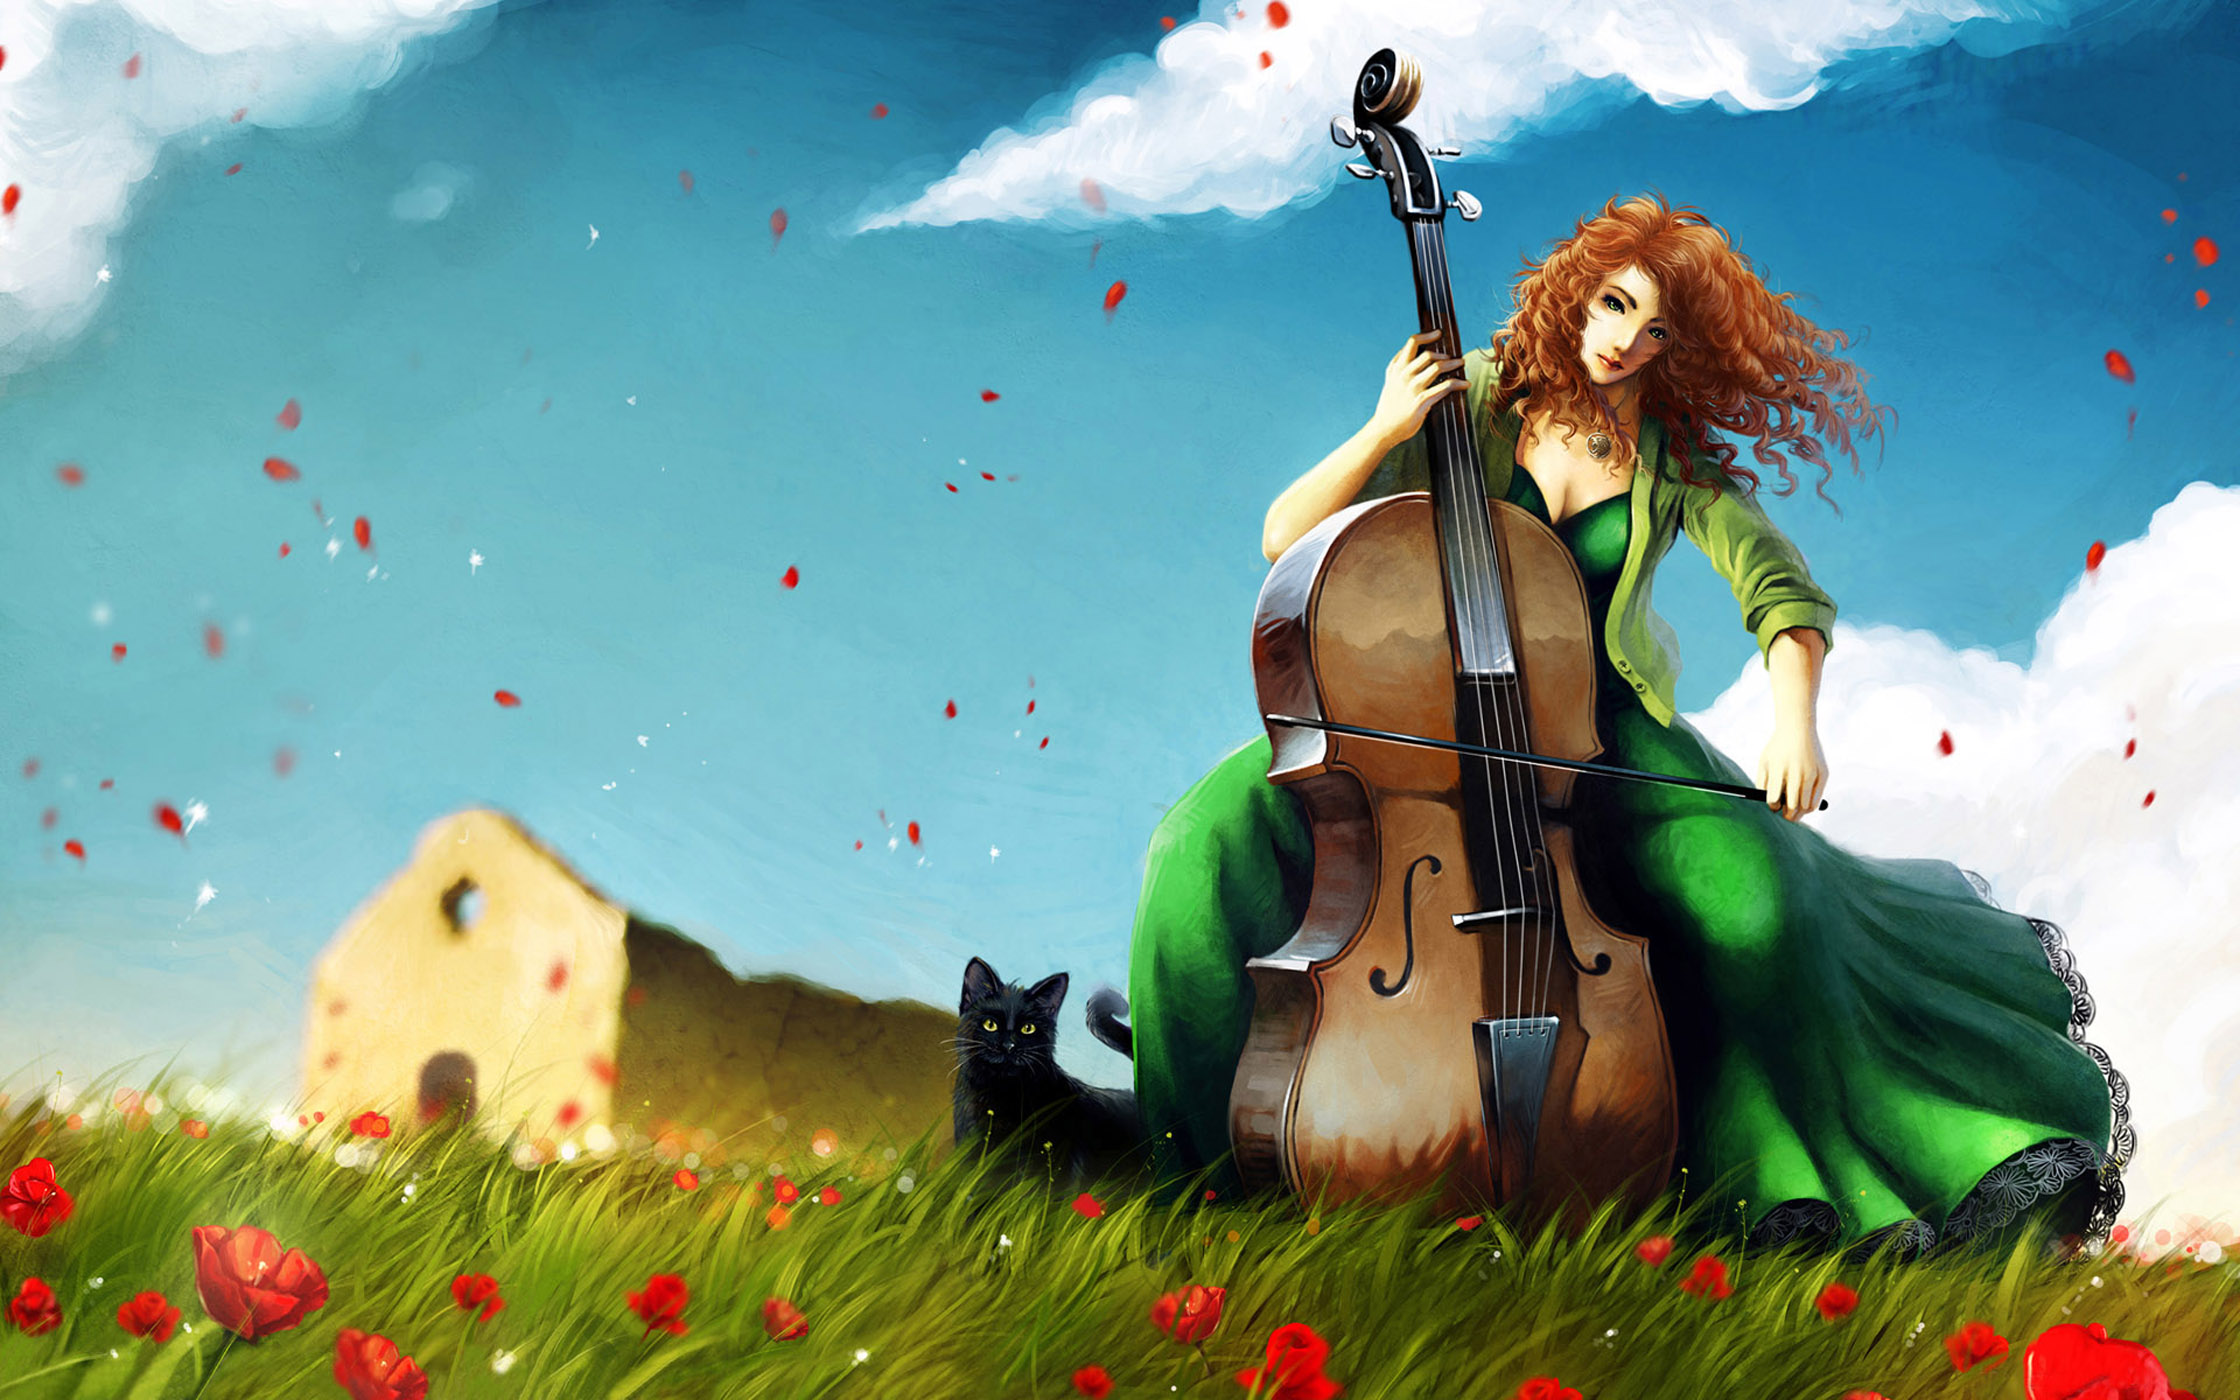 Музыкальная игра бабах. Девушка с виолончелью. Музыкант арт. Музыкальные арты. Рыжая девушка с виолончелью.